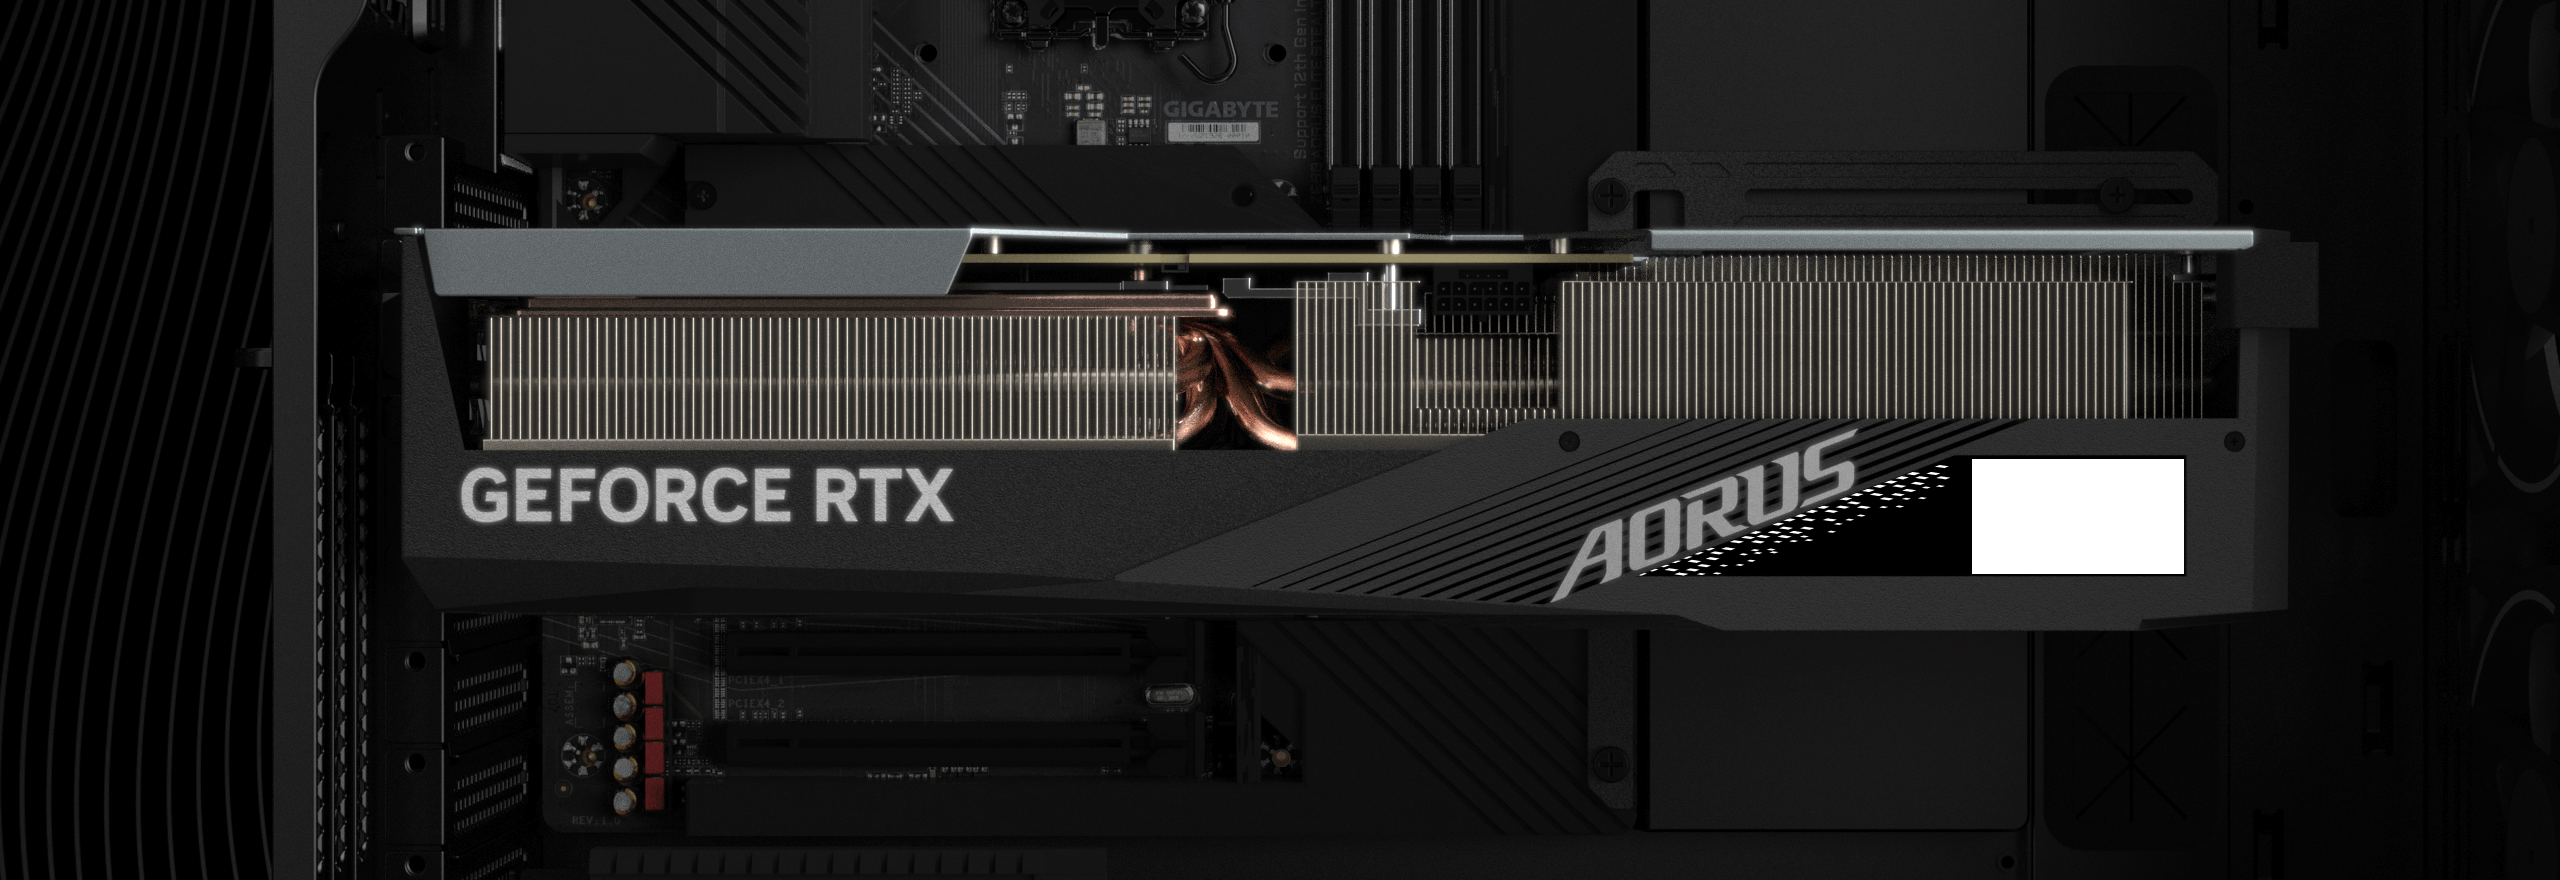 RTX 4090 AORUS. AORUS GEFORCE RTX™ 4090 Master 24g. RTX 4090 GPU.